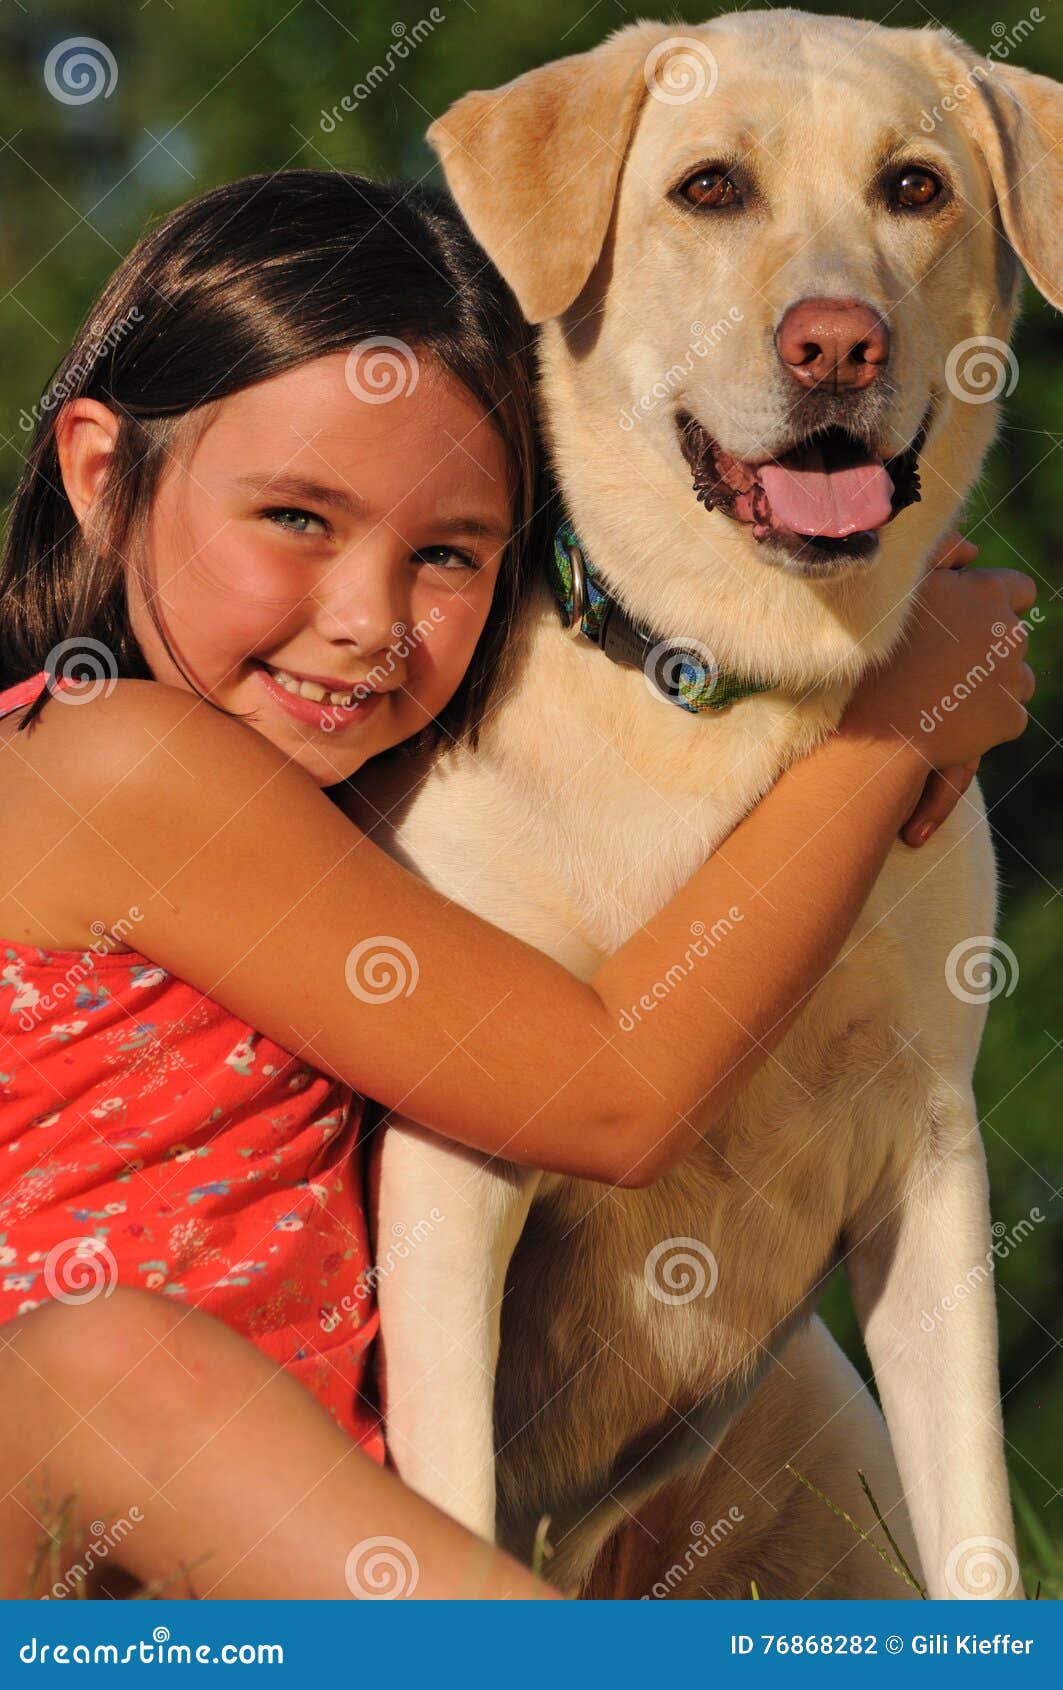 эротика малолетка с собаками фото 15